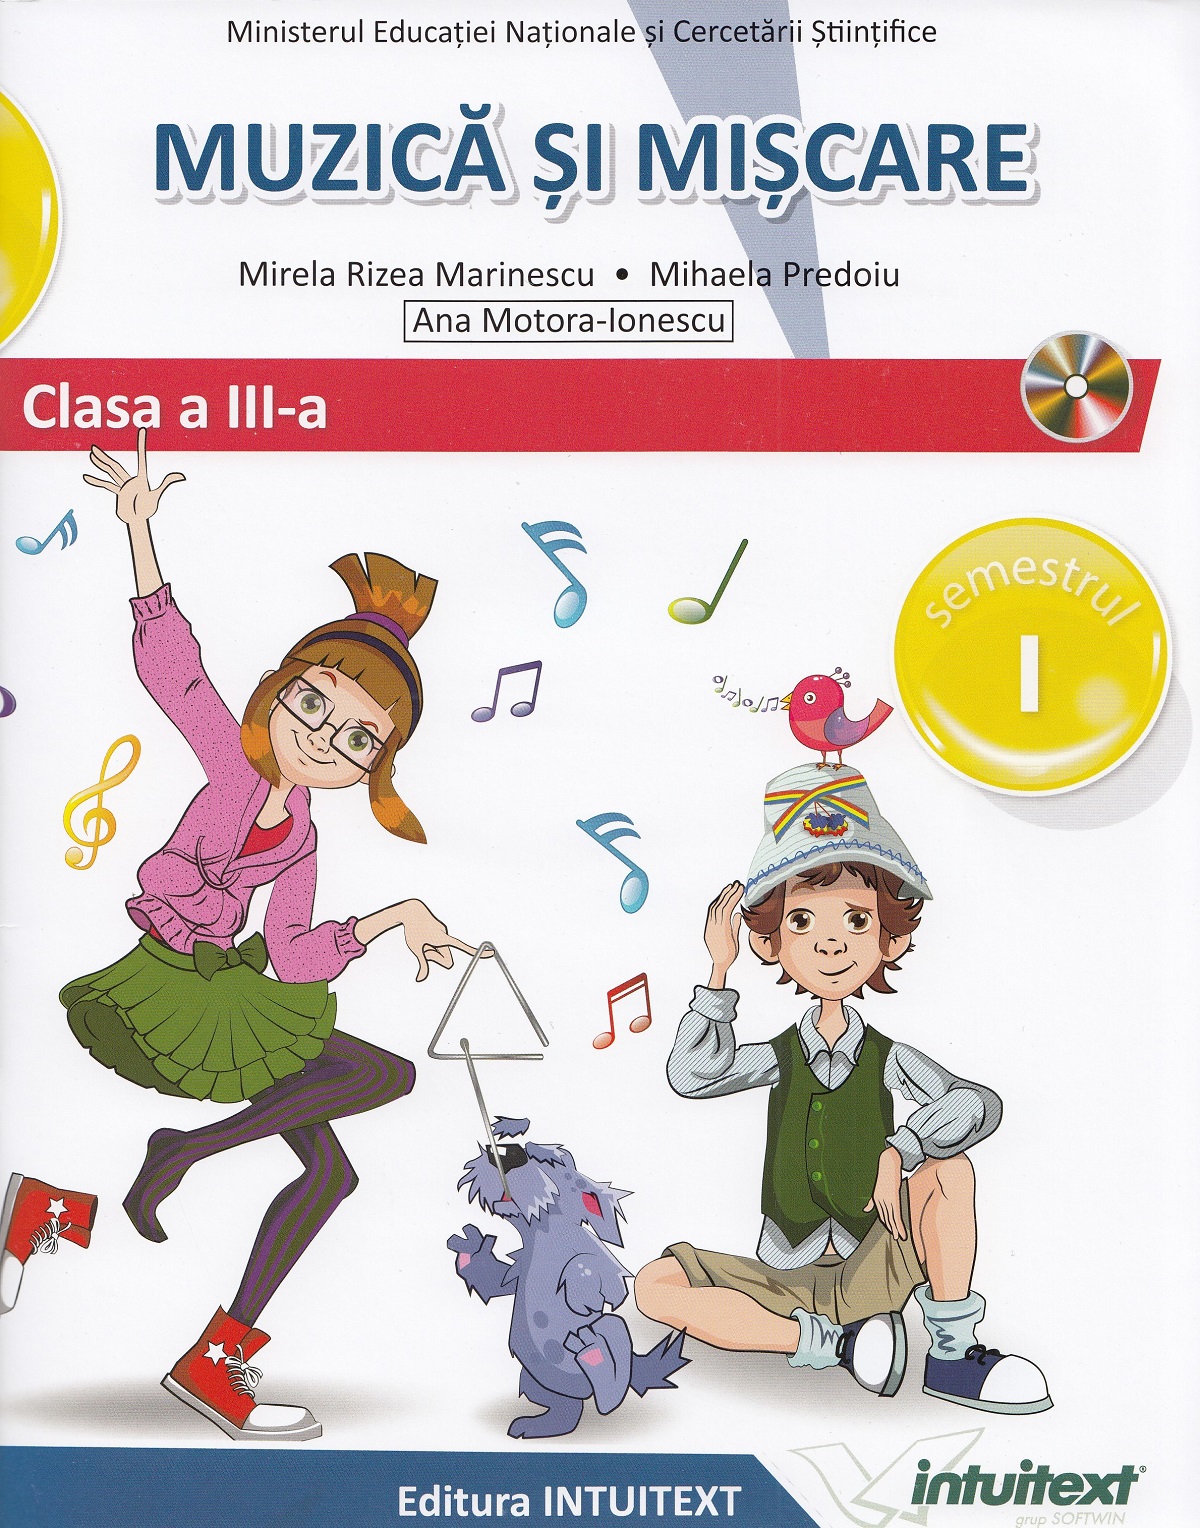 Muzica si miscare - Clasa 3 Sem.1+2 - Manual + CD - Mirela Rizea Marinescu, Mihaela Predoiu, Ana Motora-Ionescu